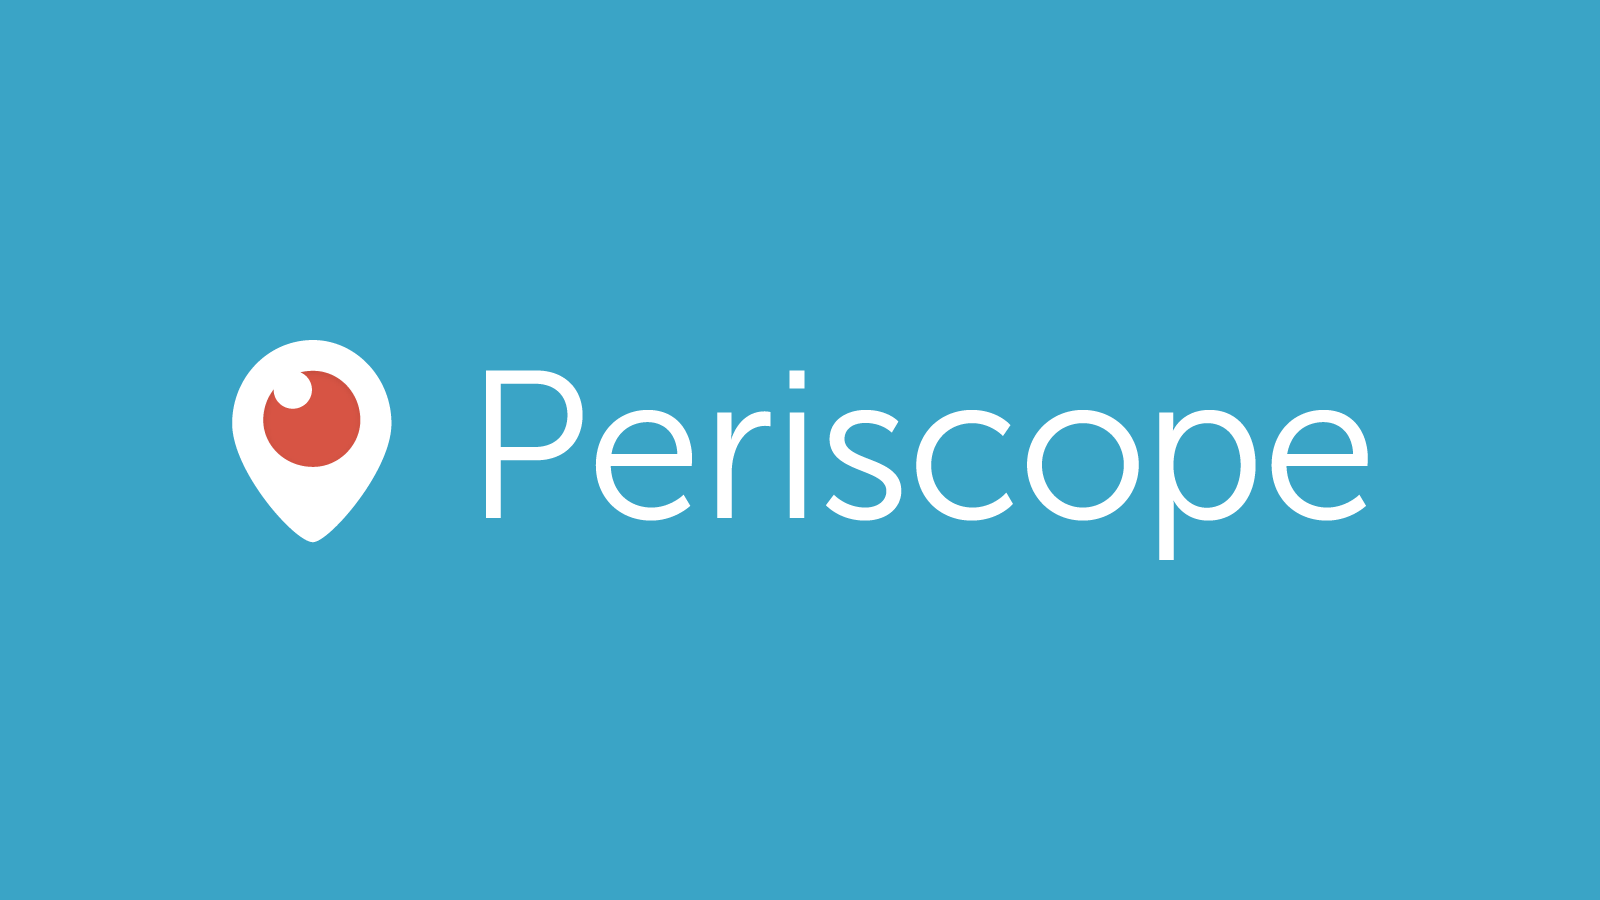 Twitter mungkin Menghilangkan aplikasi Video Streaming 'Periscope'